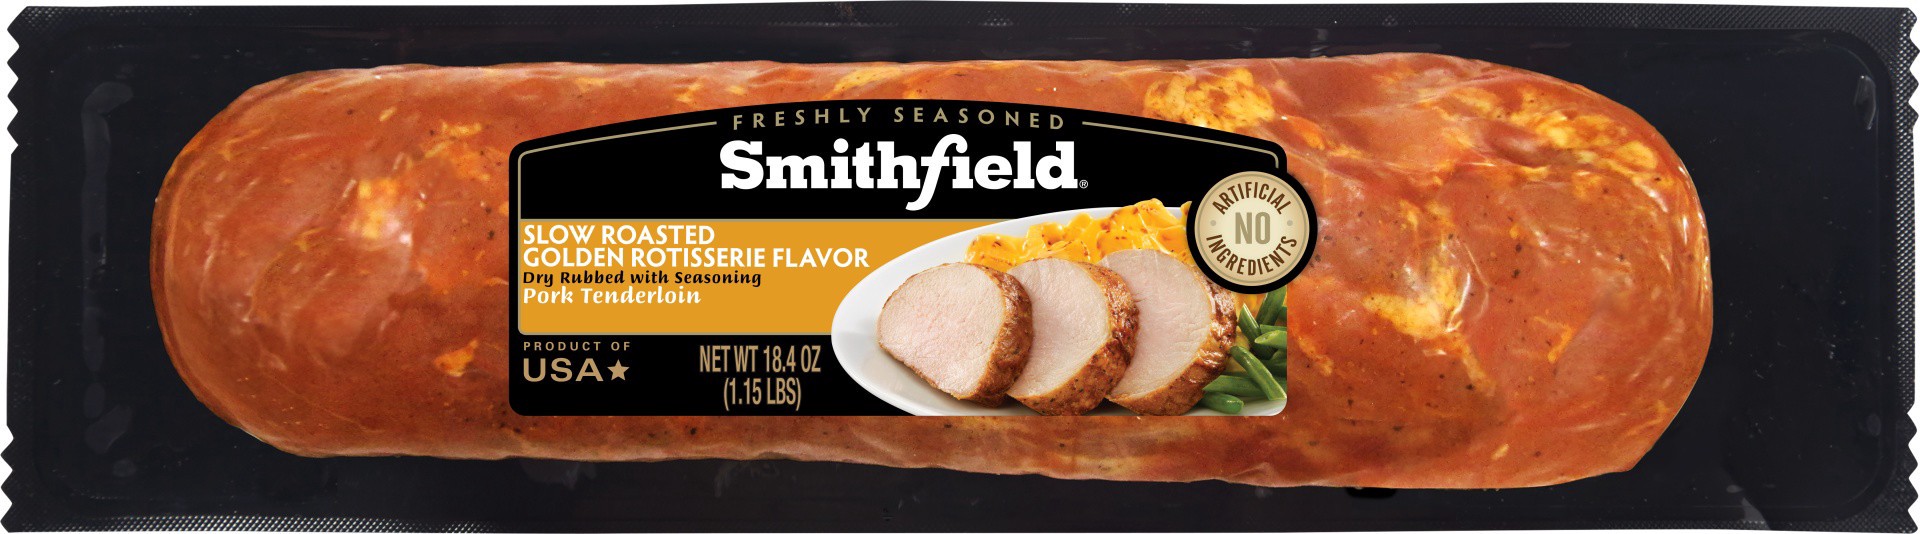 slide 1 of 11, Smithfield Golden Rotisserie Flavor Pork Tenderloin, 18.4 oz